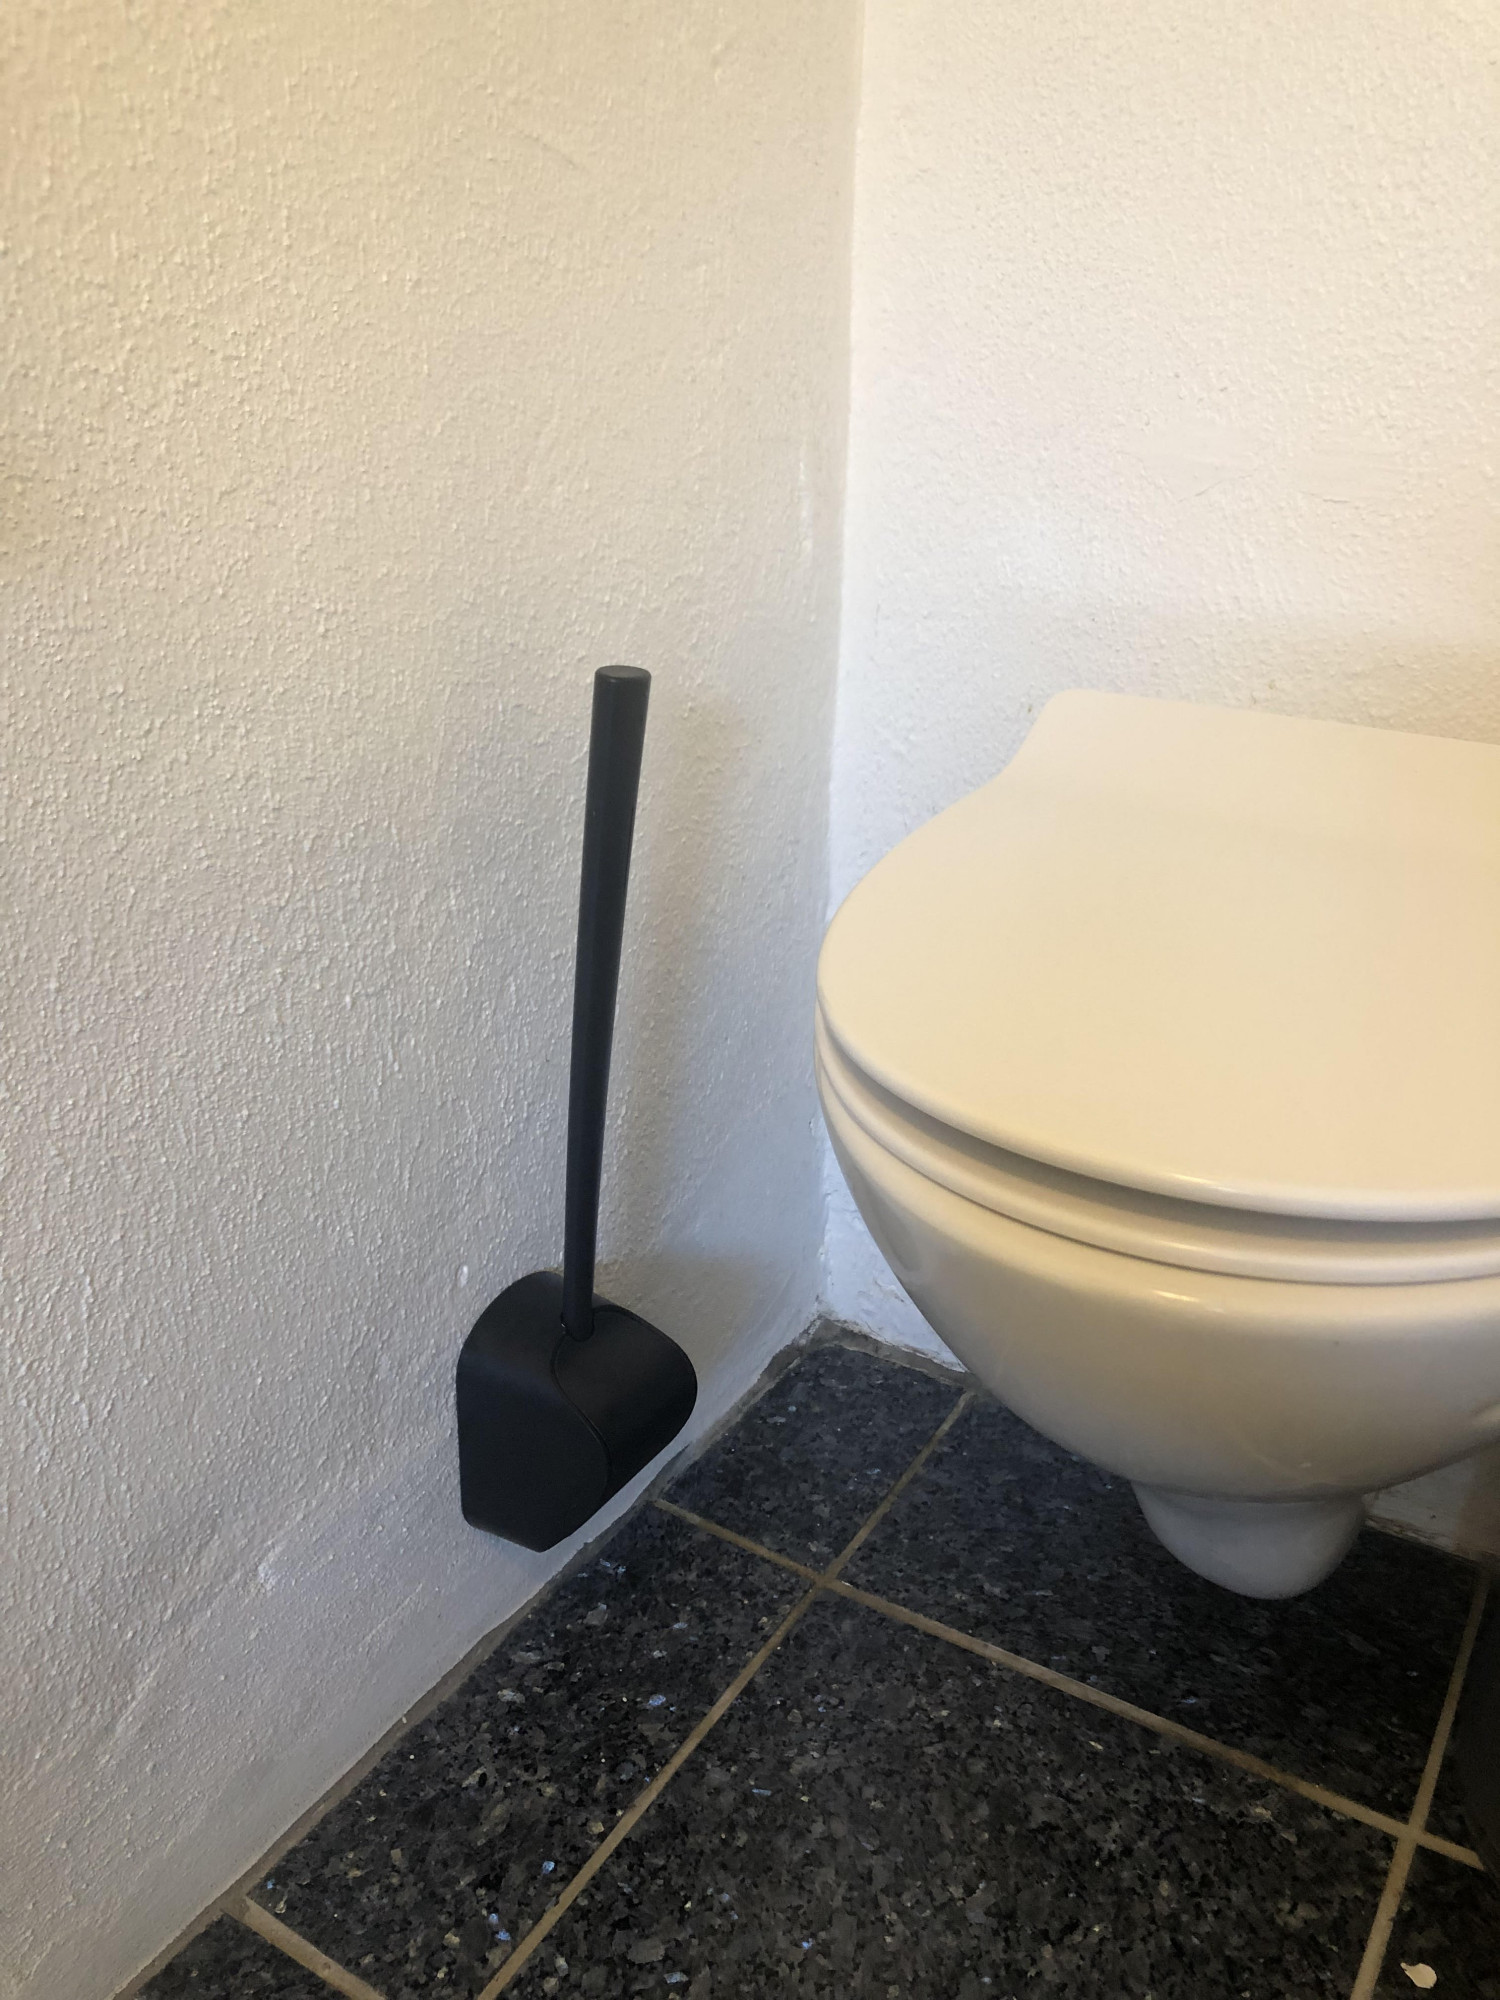 Toiletter bedst i test